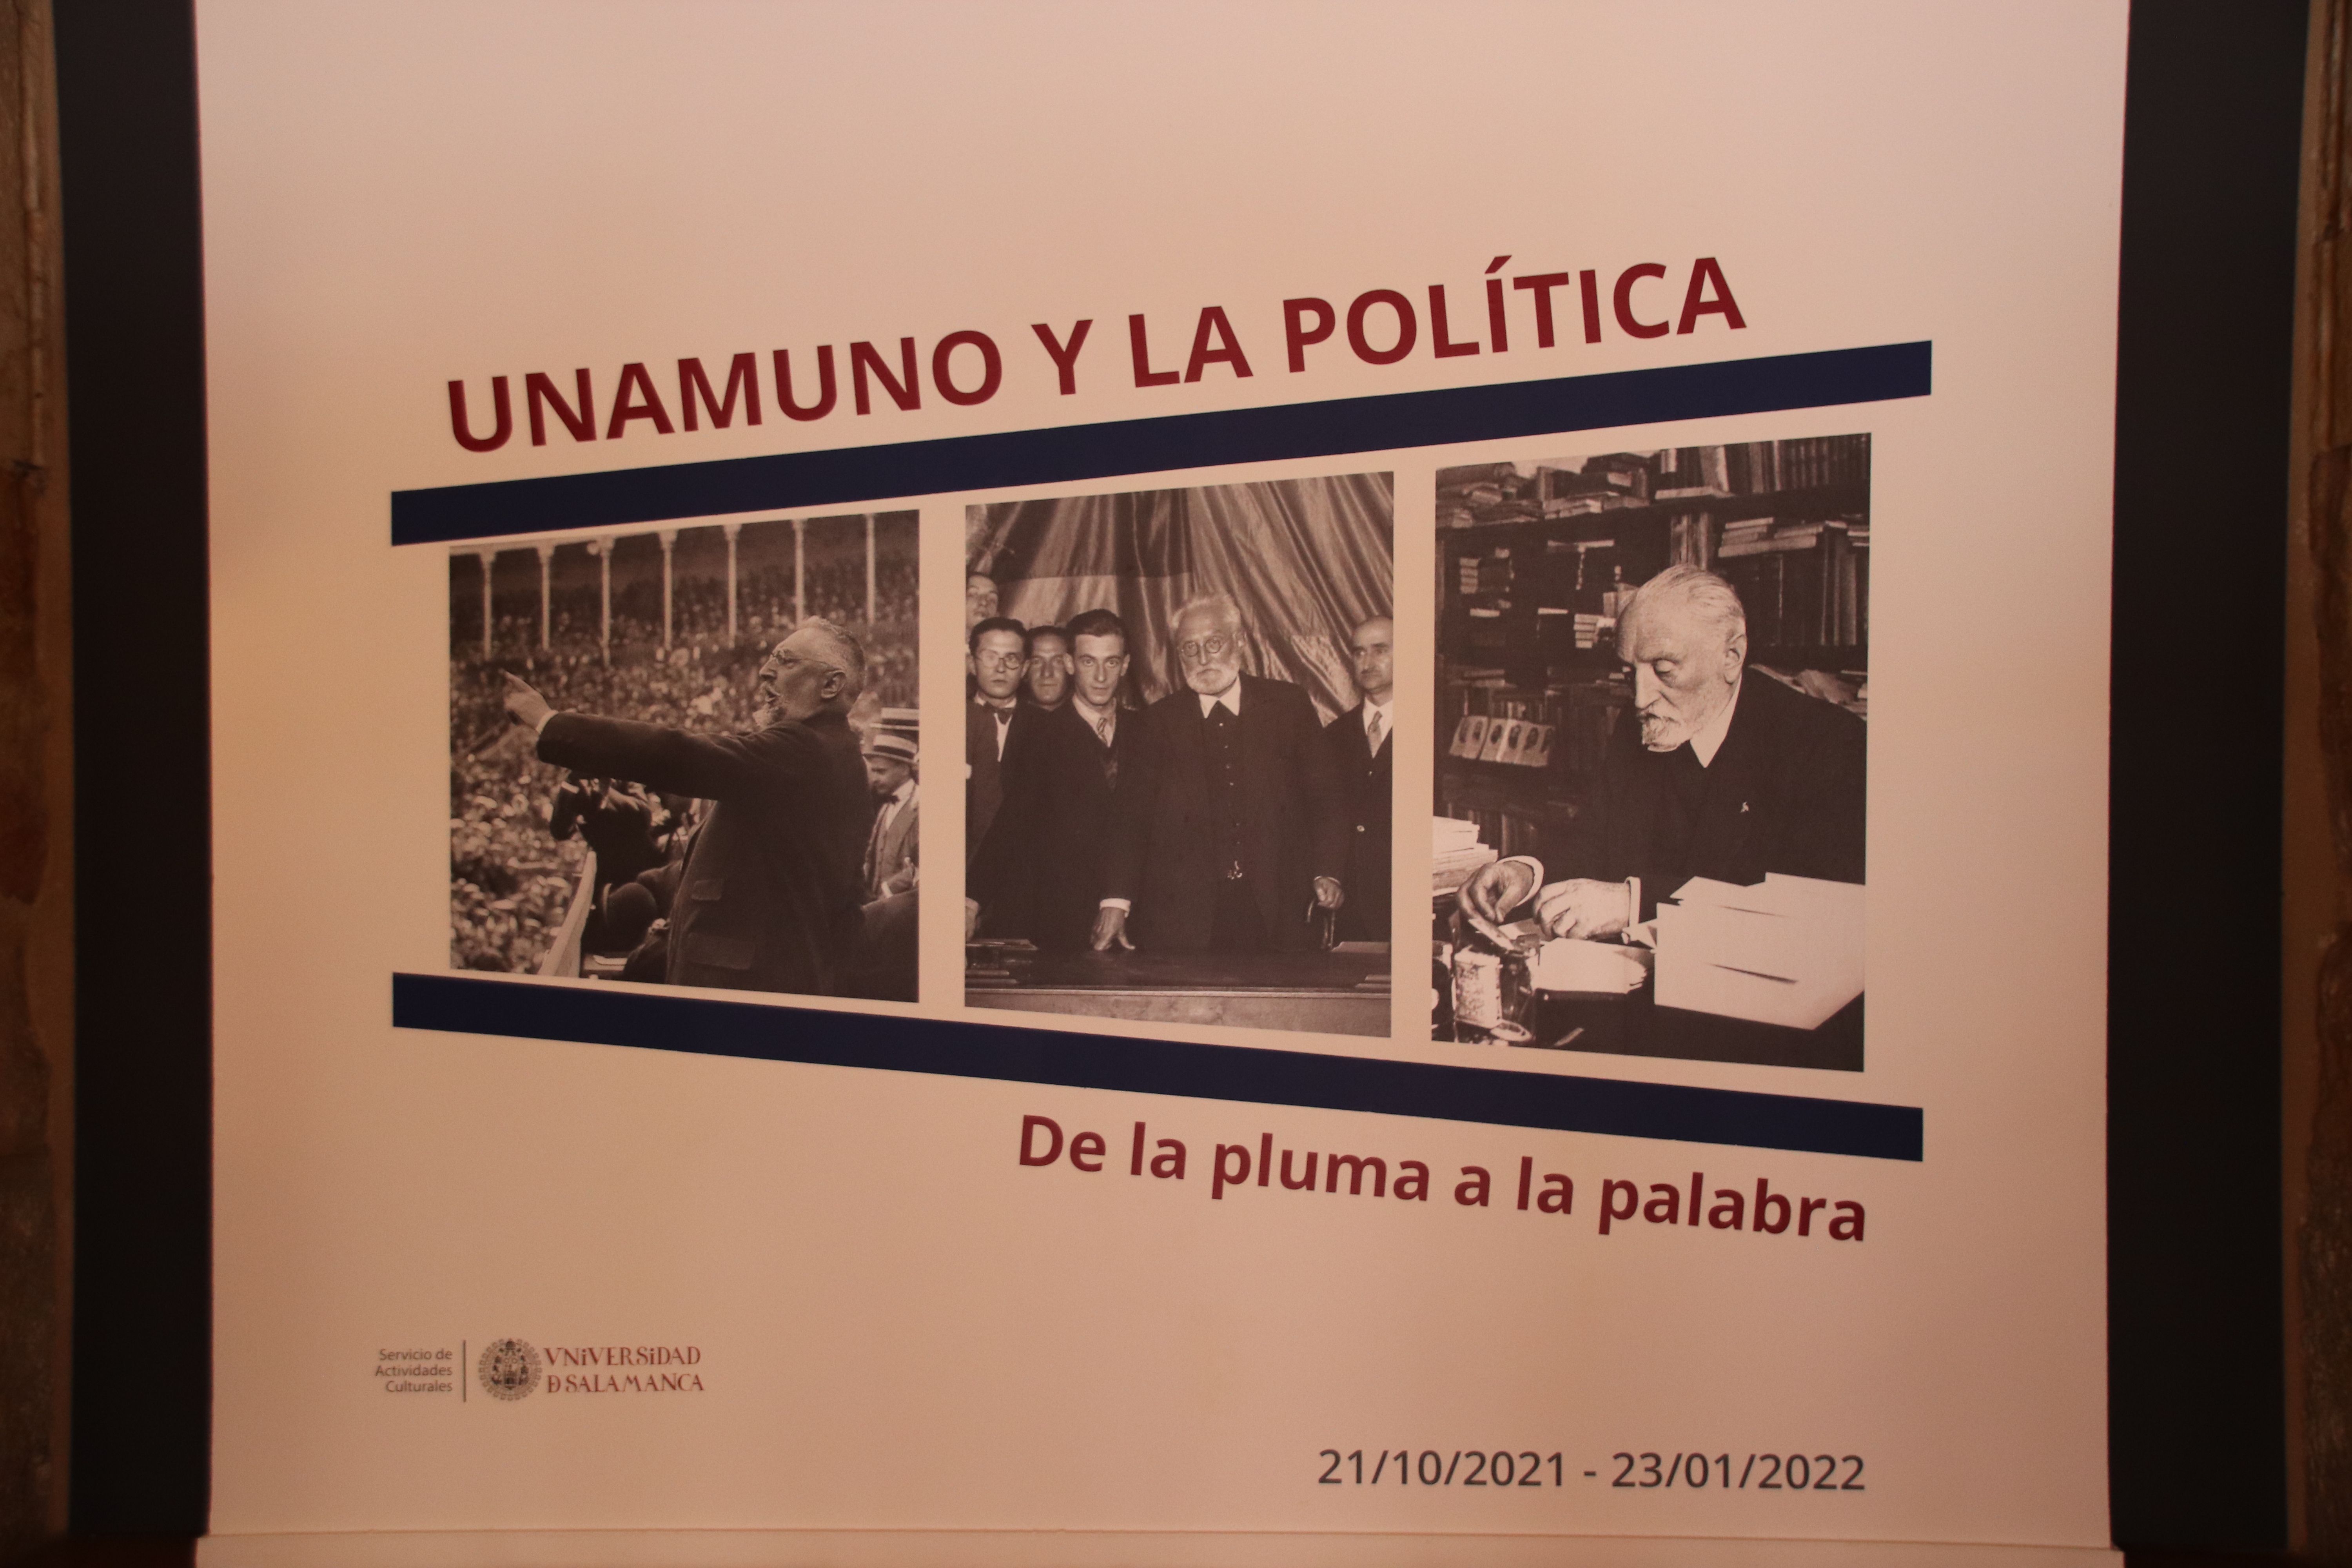 Unamuno y la política "De la pluma a la palabra" Sala de Exposiciones de Hospedería Fonseca 